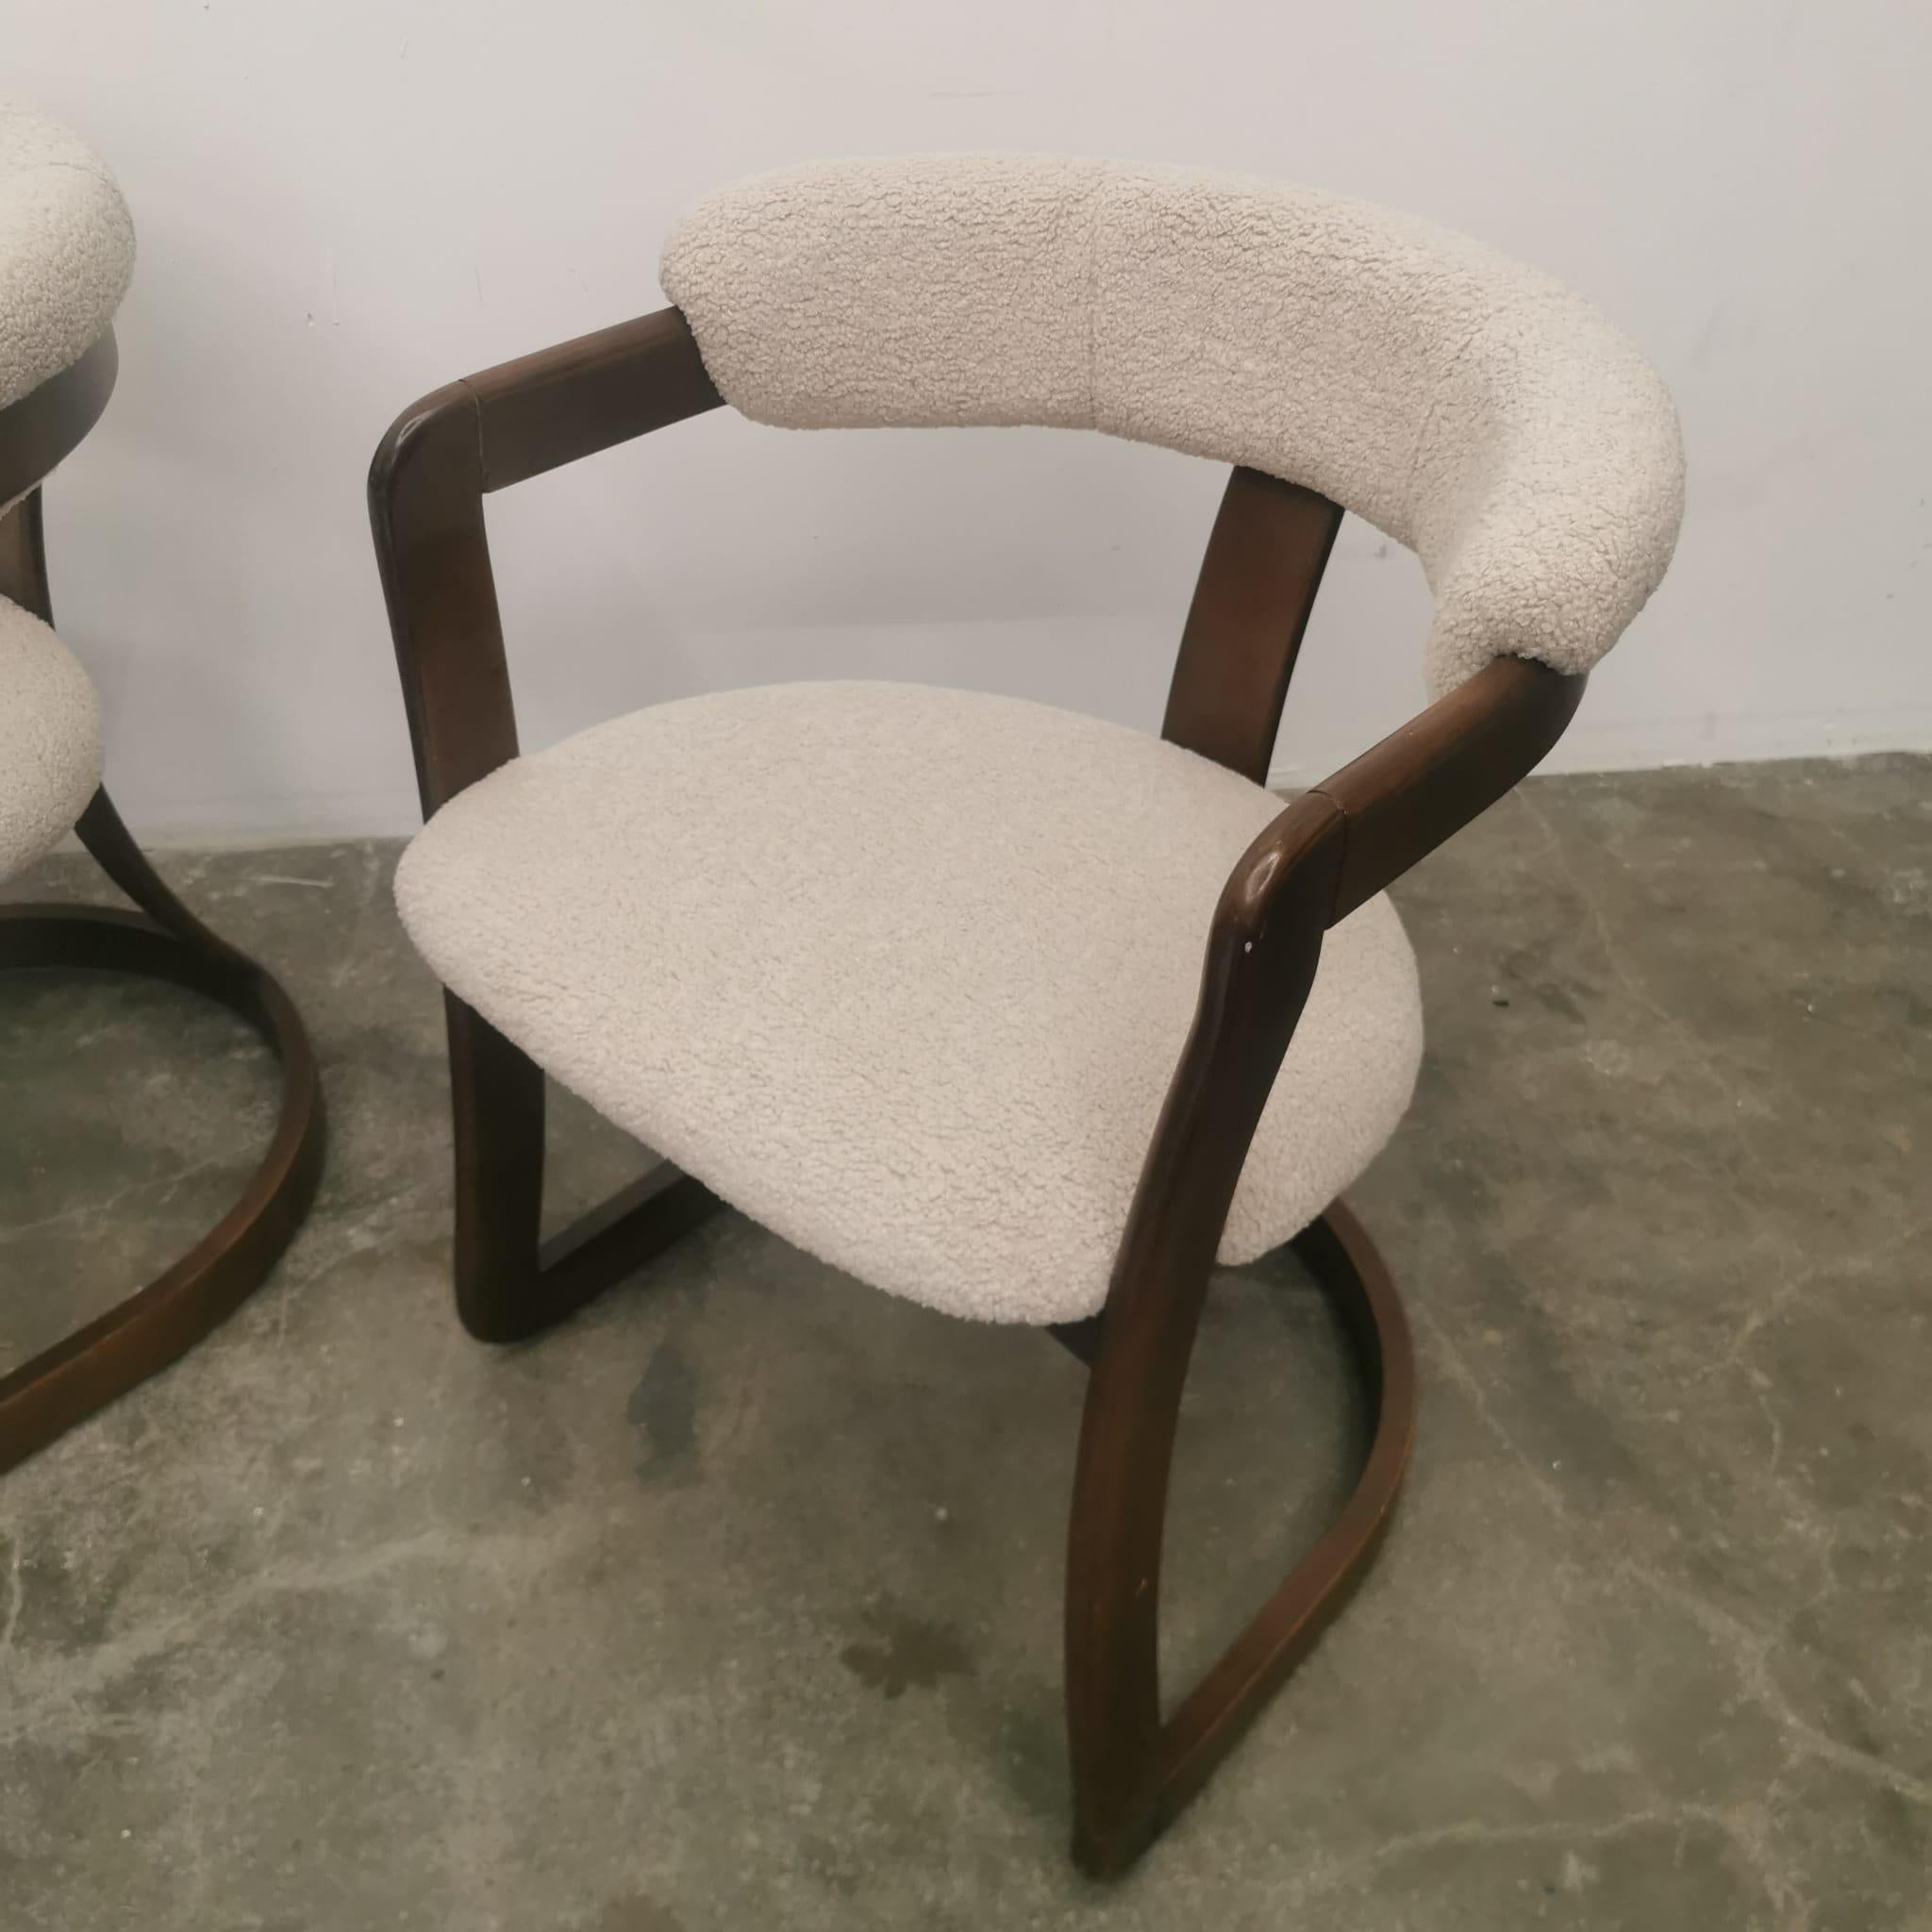 Le lot de deux chaises de style Pamplona apporte une touche d'élégance intemporelle et de confort à tout espace intérieur. Fabriquées en bois robuste de haute qualité, ces chaises présentent un design classique avec une touche de modernité.